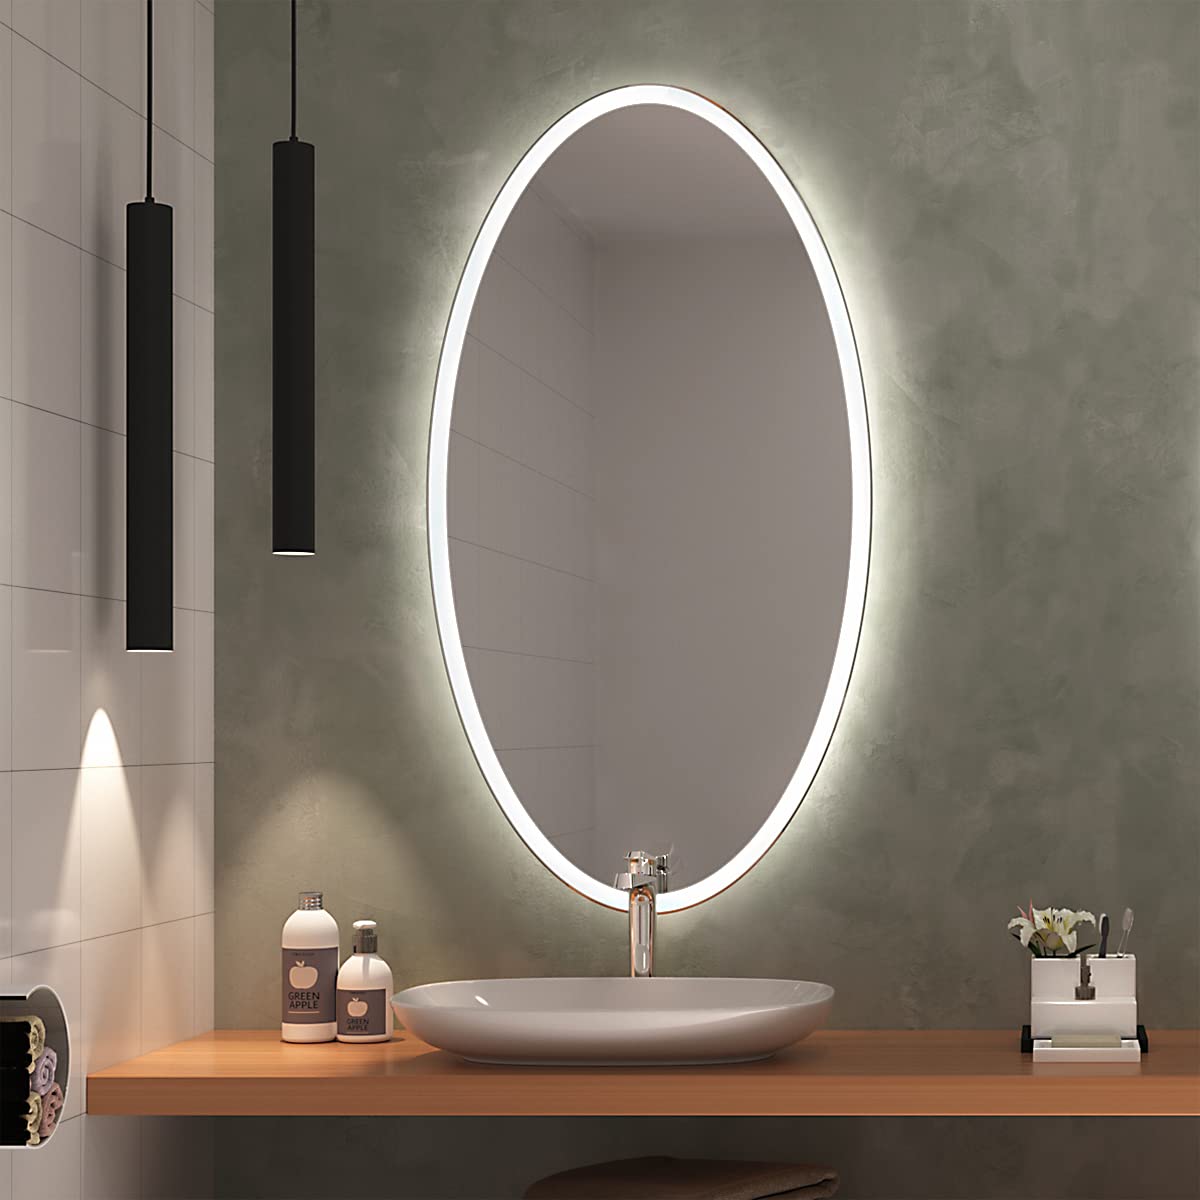 SARAR Elliptischer Wandspiegel mit rundum Beleuchtung ca. 80x120 cm Sete EL30 Badspiegel Spiegel mit Beleuchtung Badezimmerspiegel